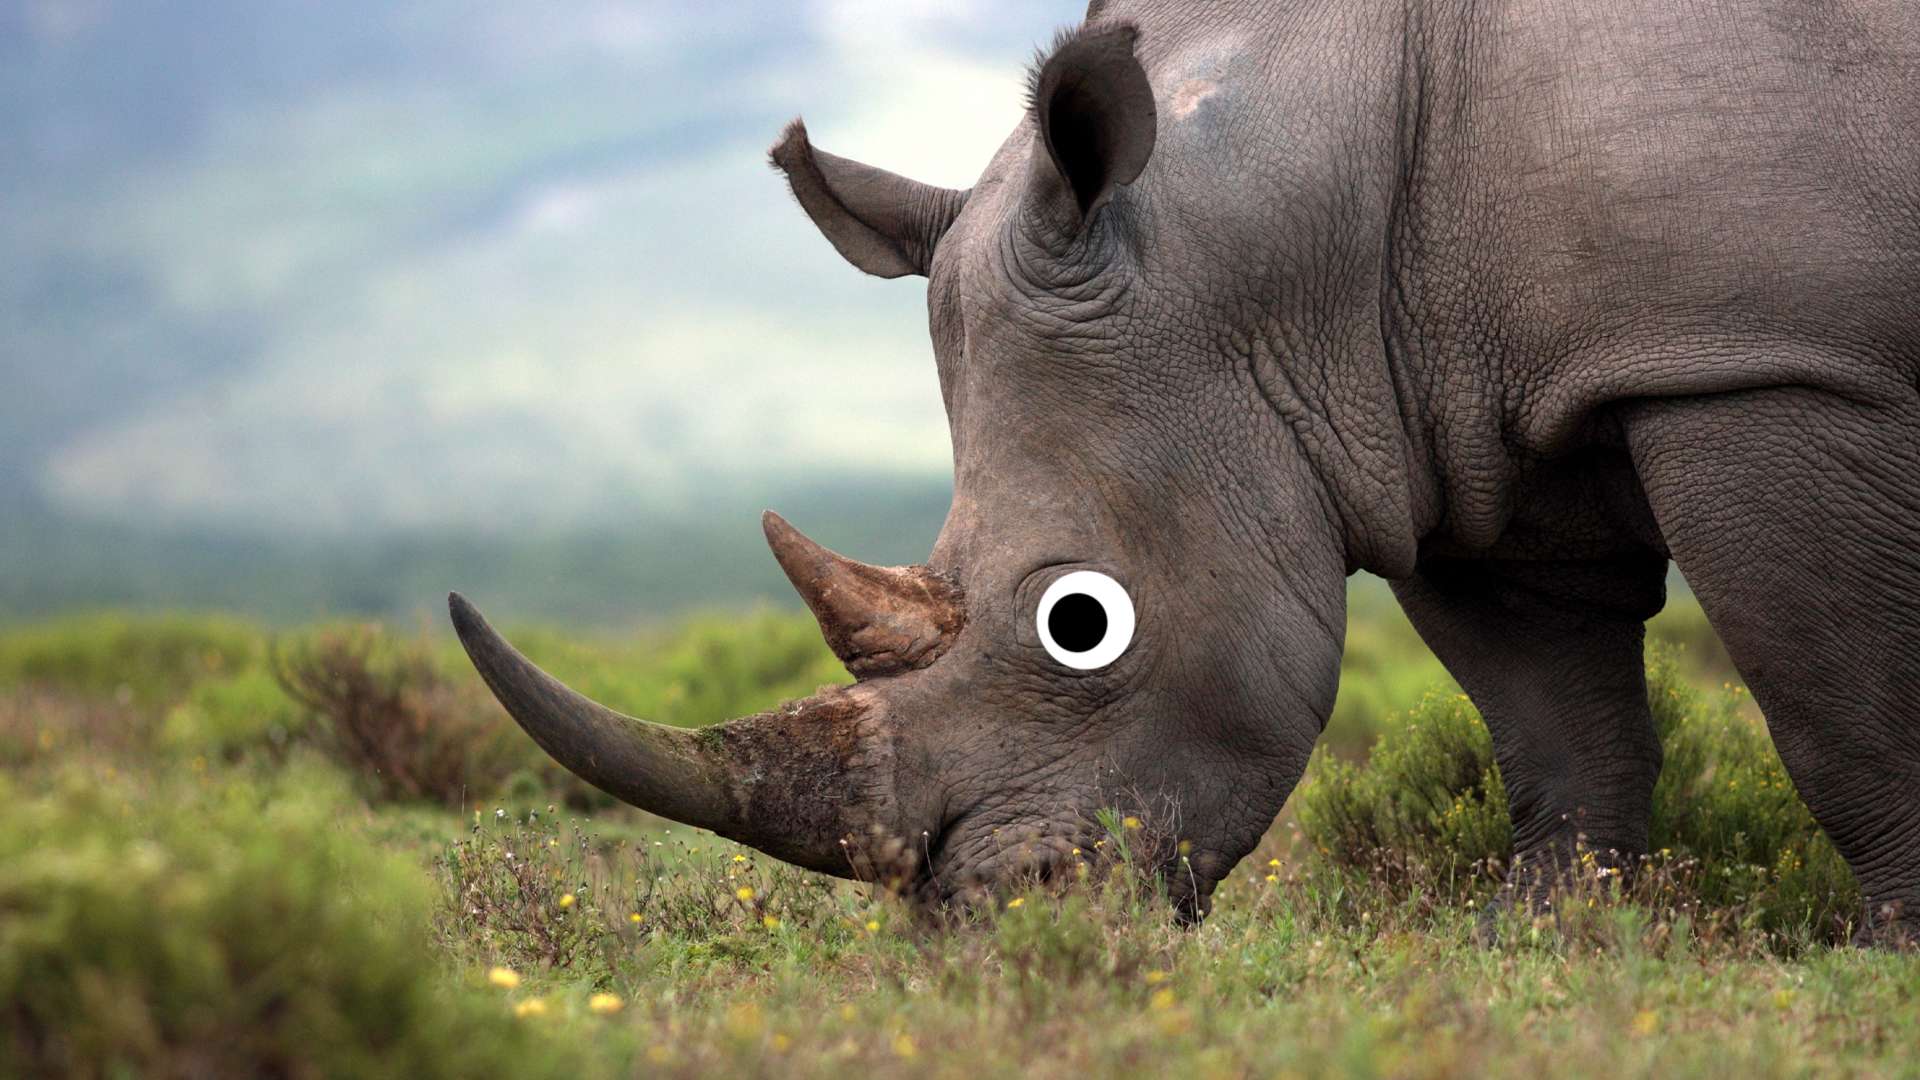 A rhinoceros 